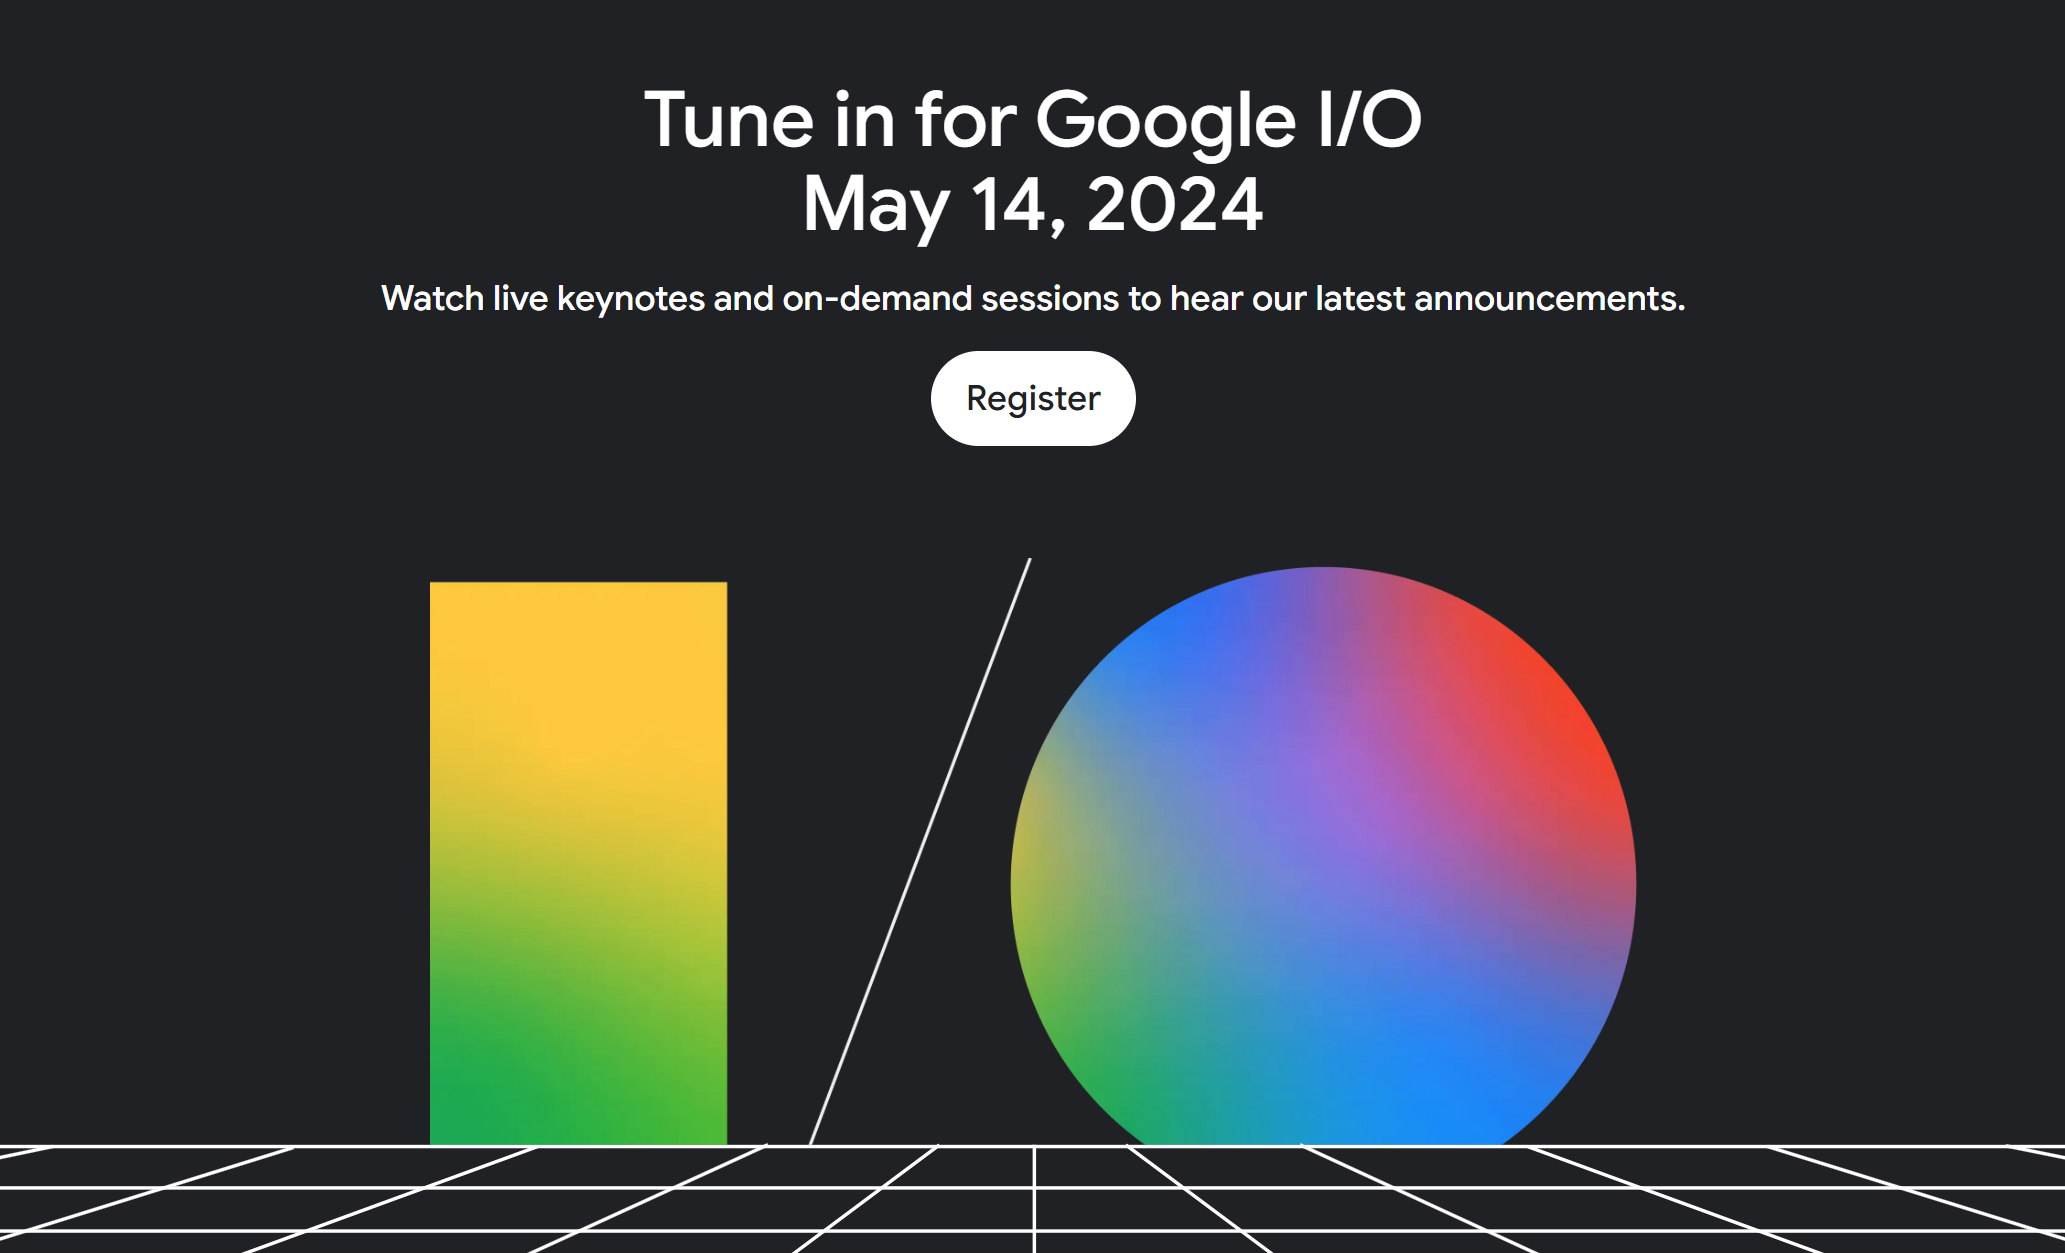 Um convite para o Google I/O 2024 com um grande logotipo do I/O e a data 14 de maio de 2024.